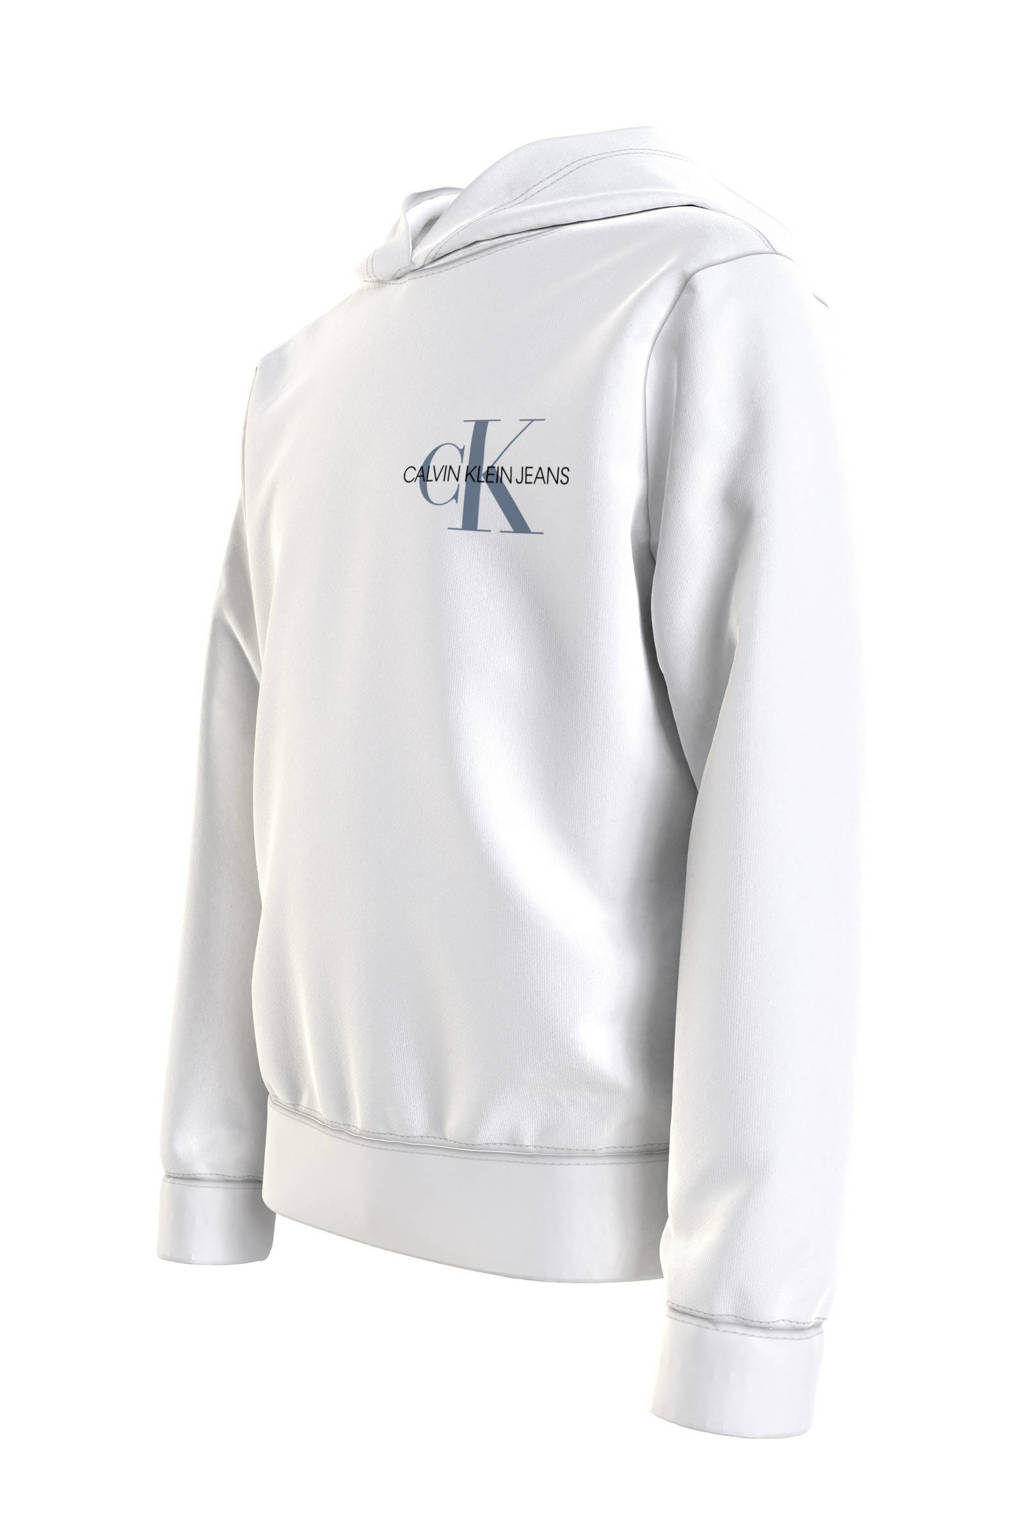 Witte jongens CALVIN KLEIN JEANS hoodie van duurzame sweatstof met logo dessin, lange mouwen, capuchon en geribde boorden